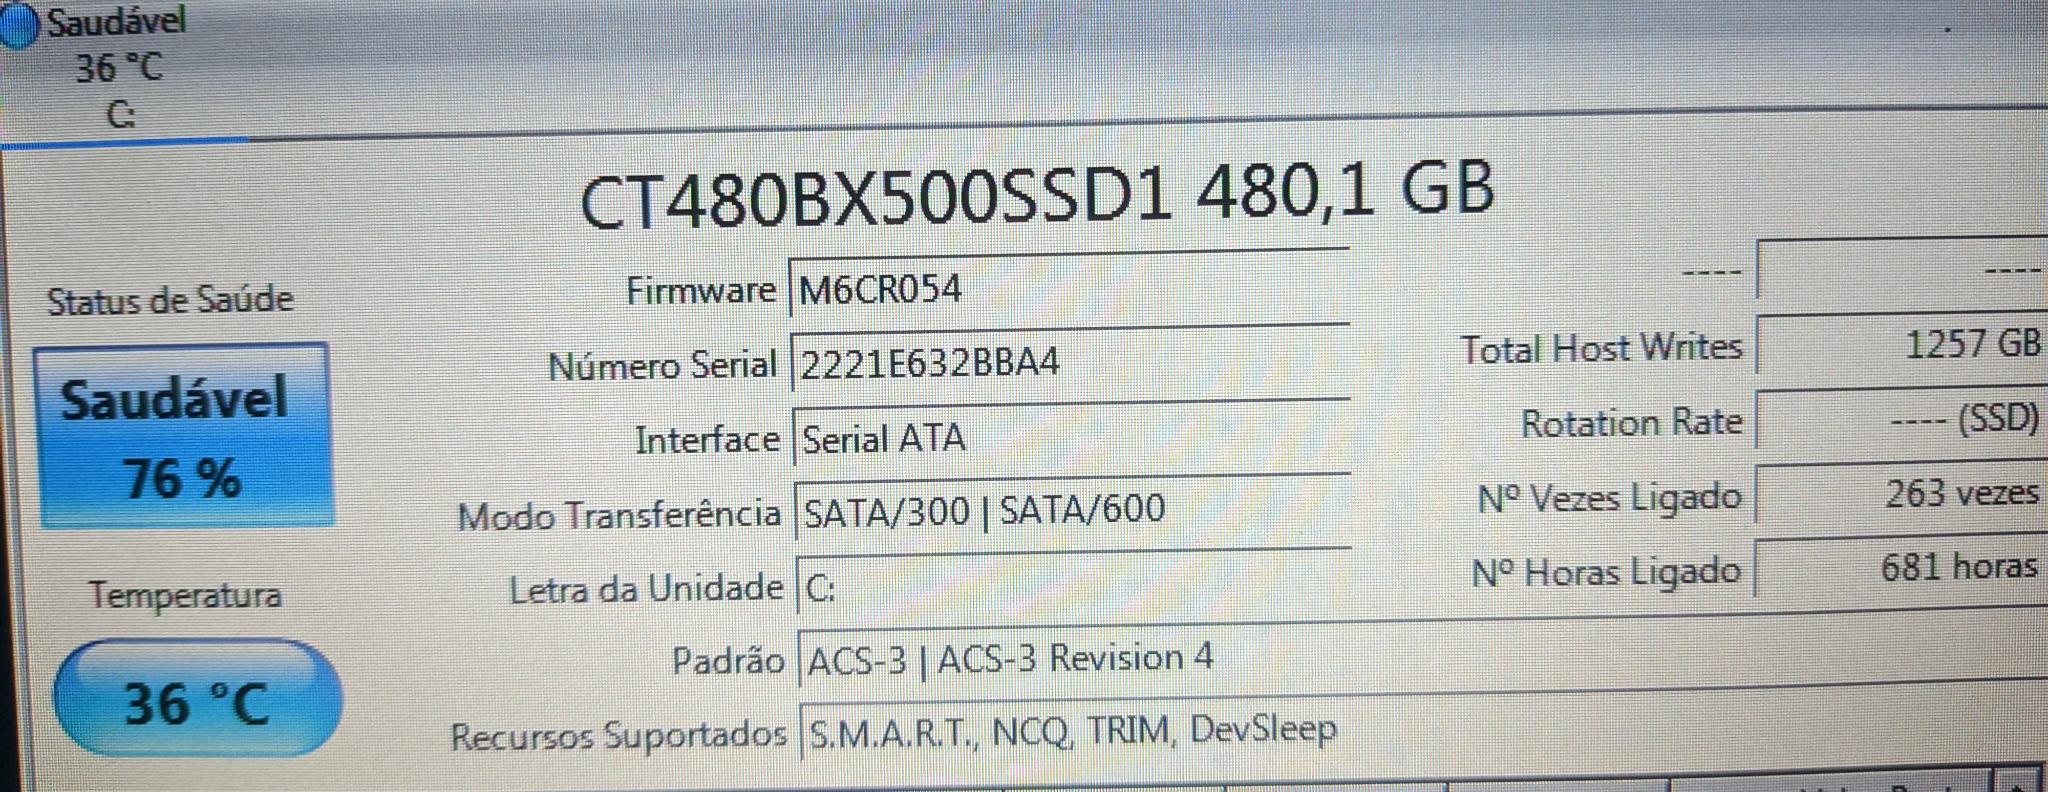 ssd 76% vida util bx500 - HD, SSD e NAS - Clube do Hardware